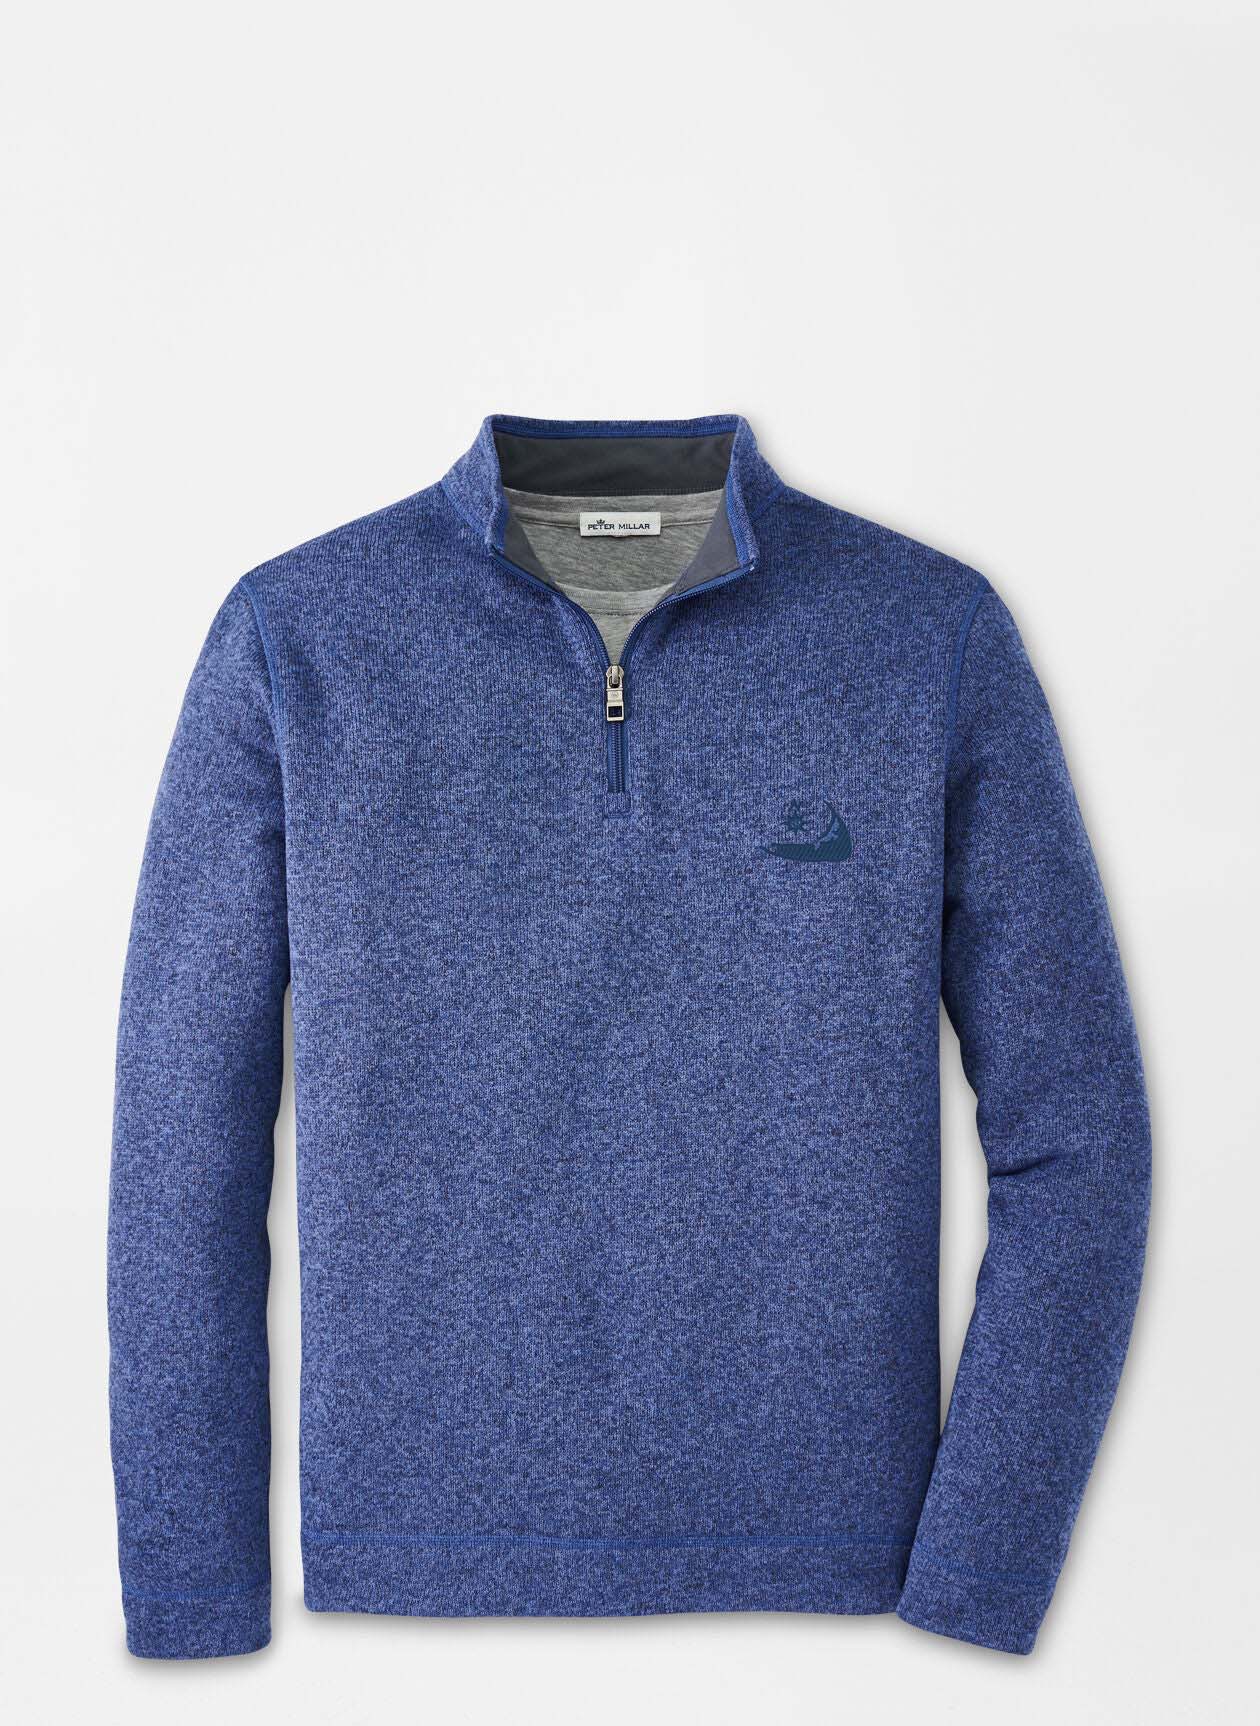 Peter Millar Crown Sweater Fleece Quarter-Zip